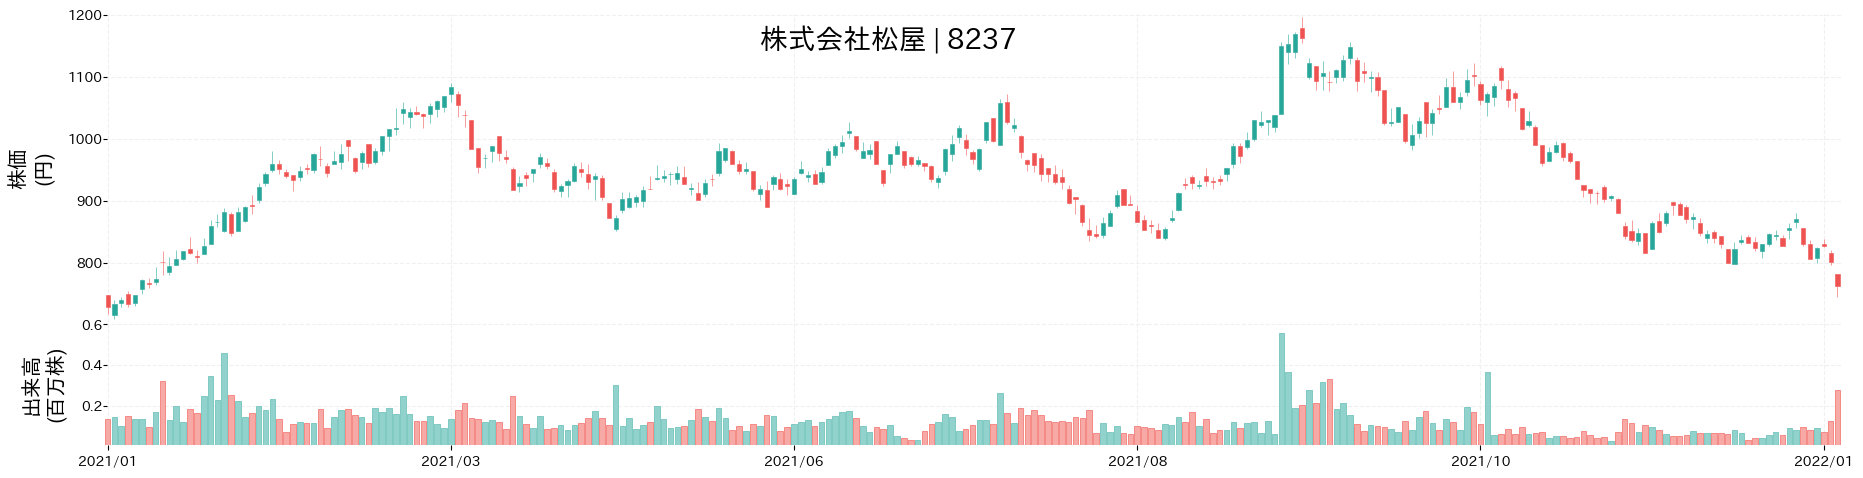 松屋の株価推移(2021)